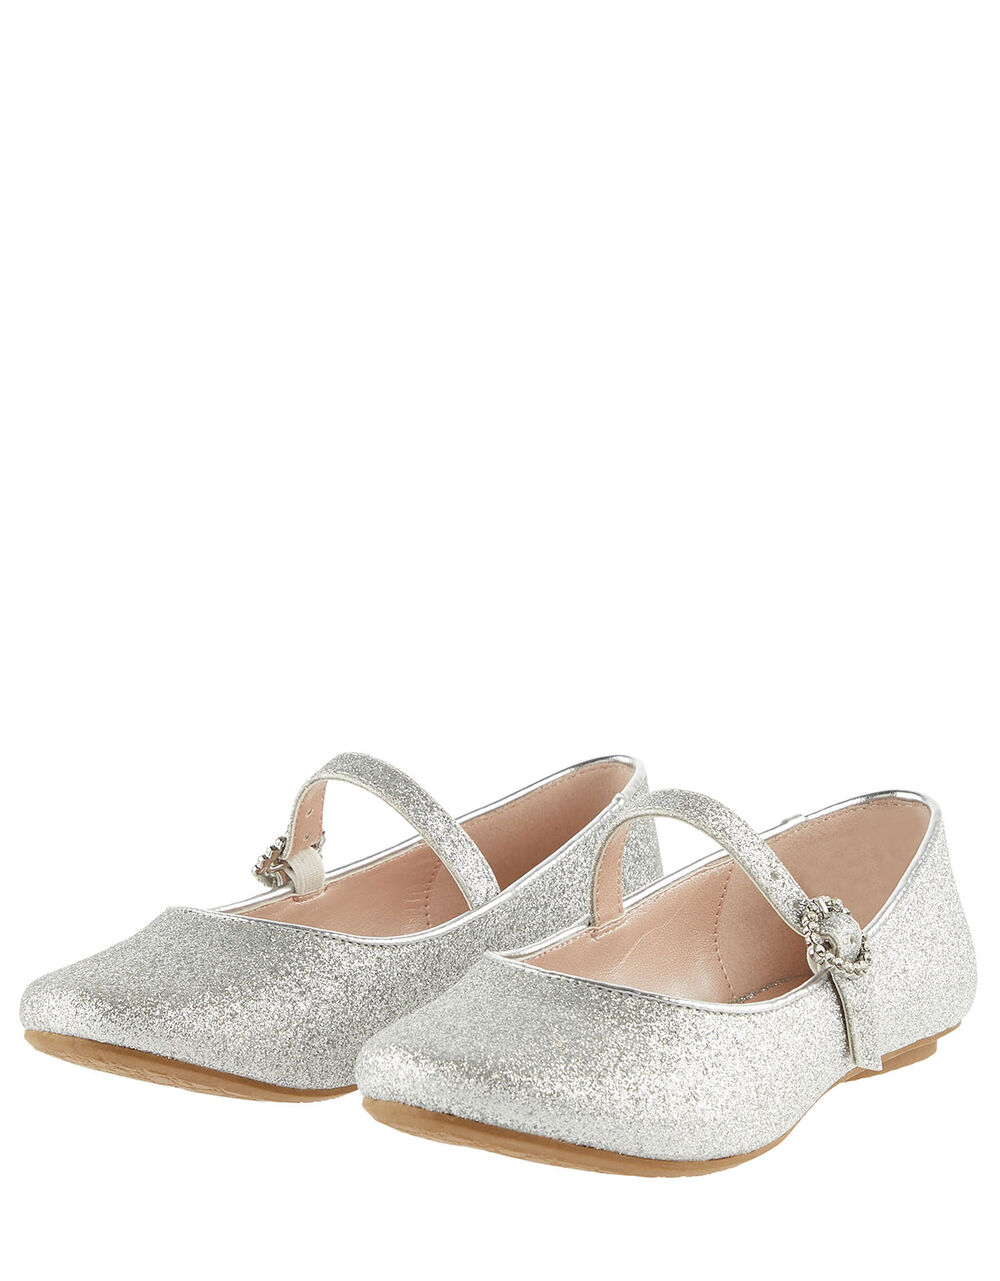 Children Children's Shoes & Sandals | Glitter Ballerina Flats Silver - EU53284